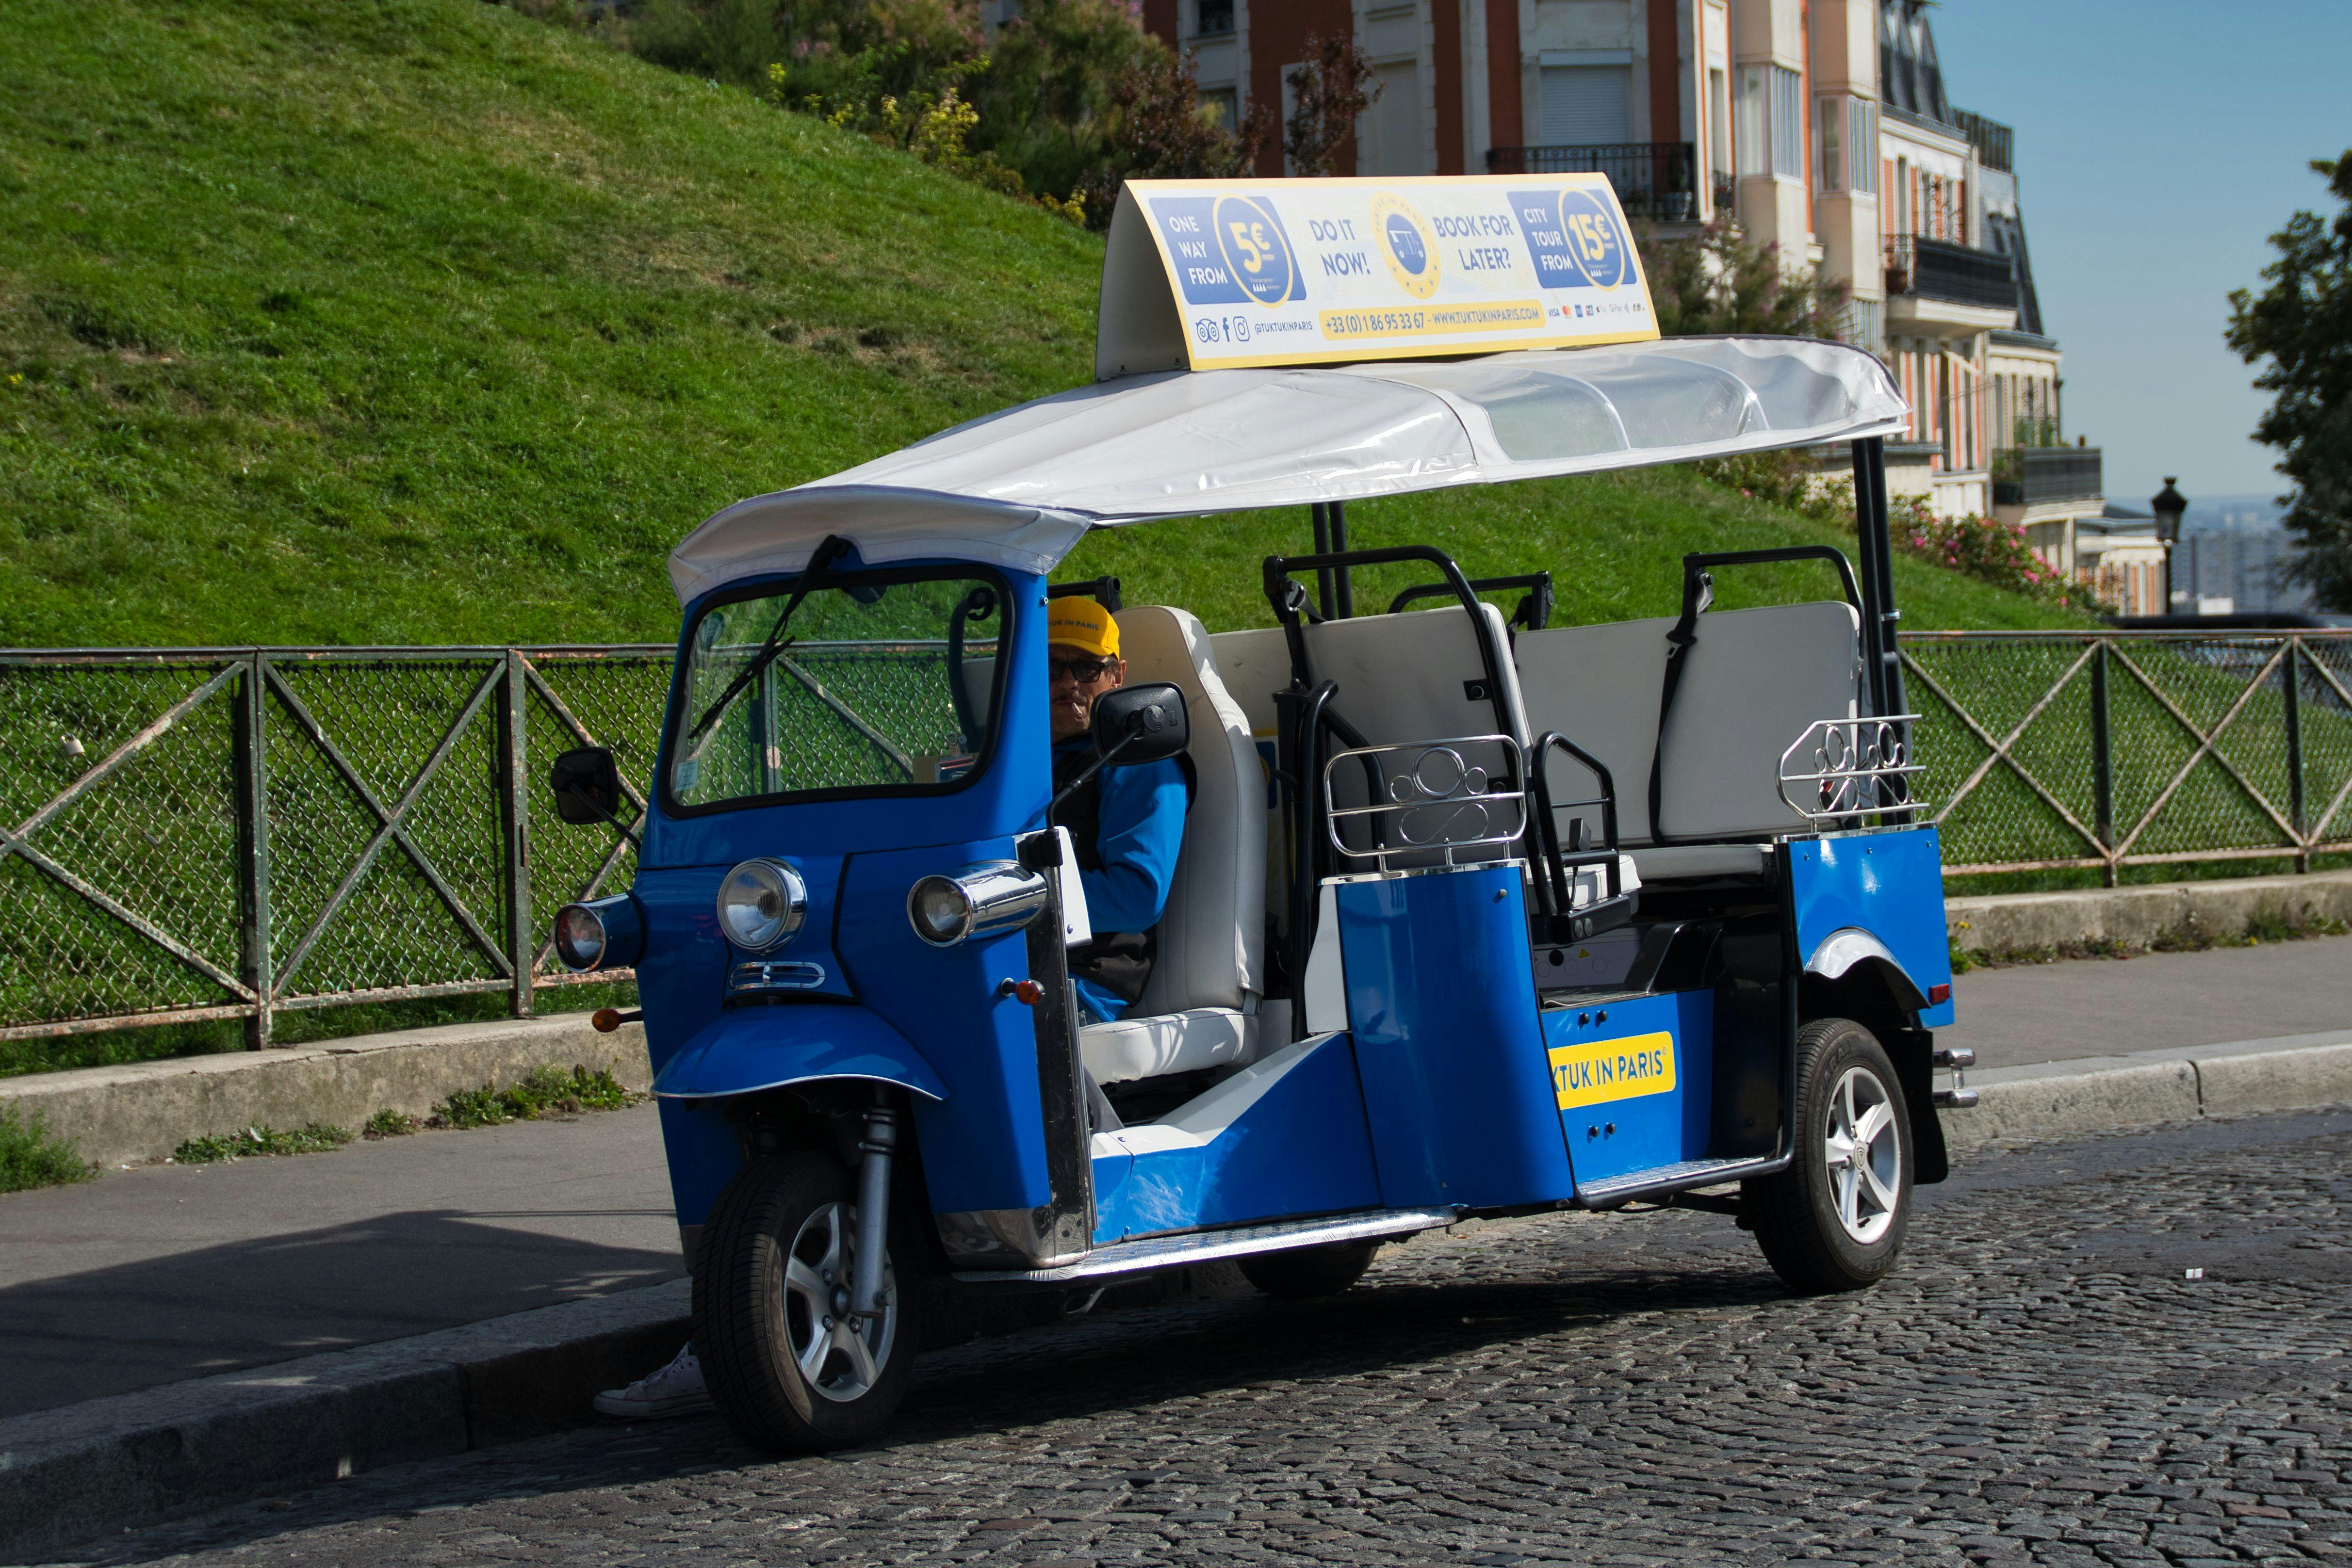 Visite Paris en tuktuk